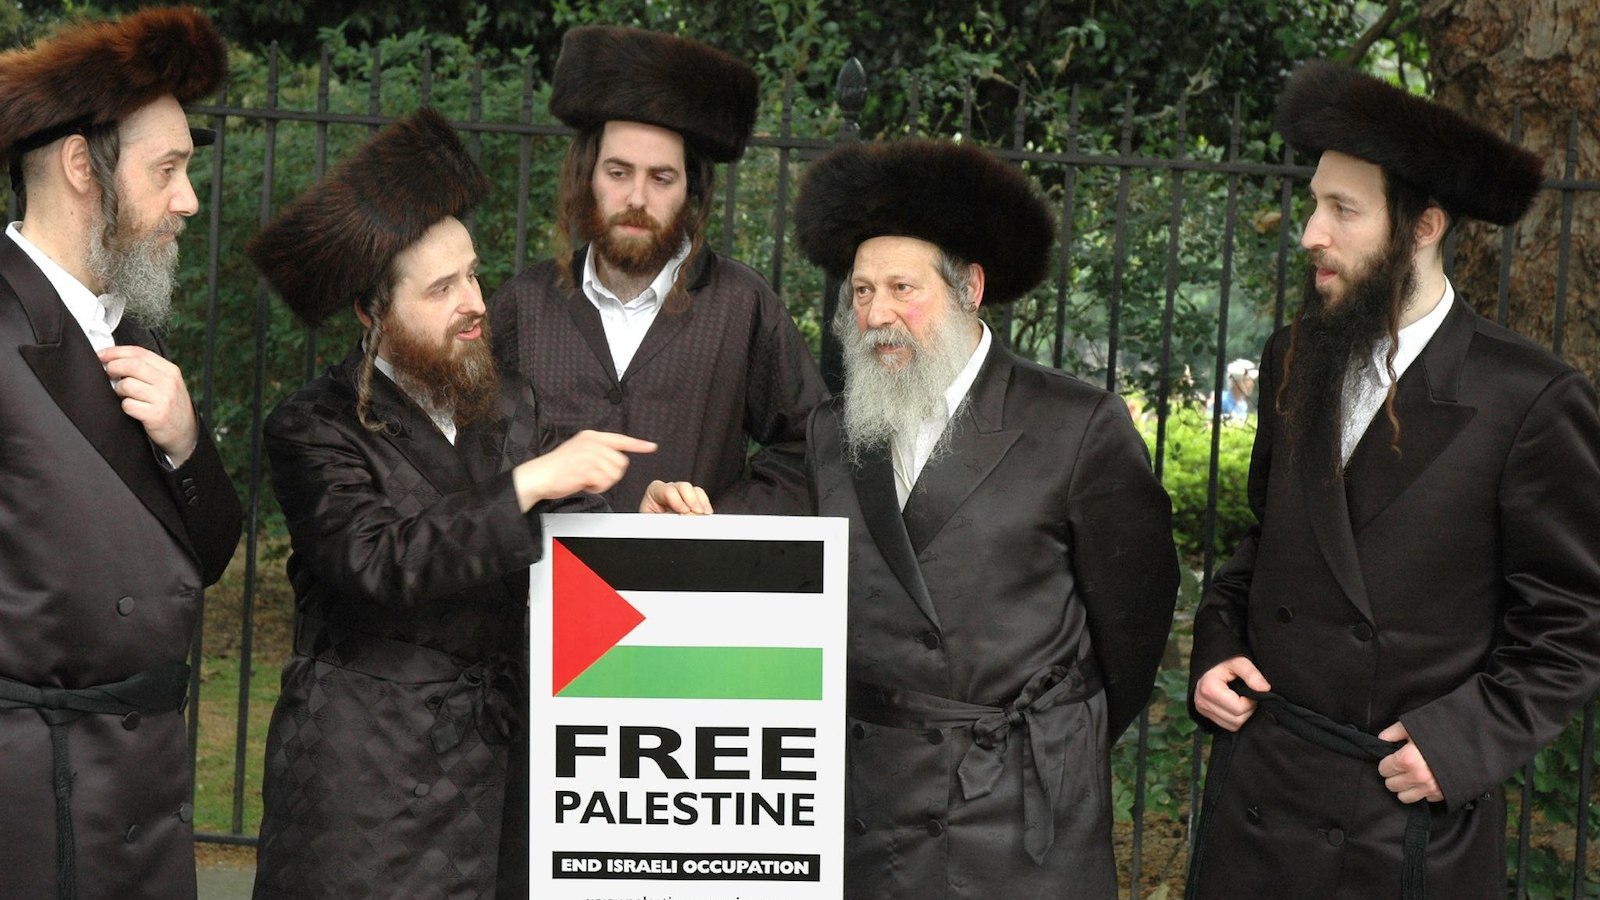 Members_of_Neturei_Karta_Orthodox_Jewish_group_protest_against_Israel.jpg